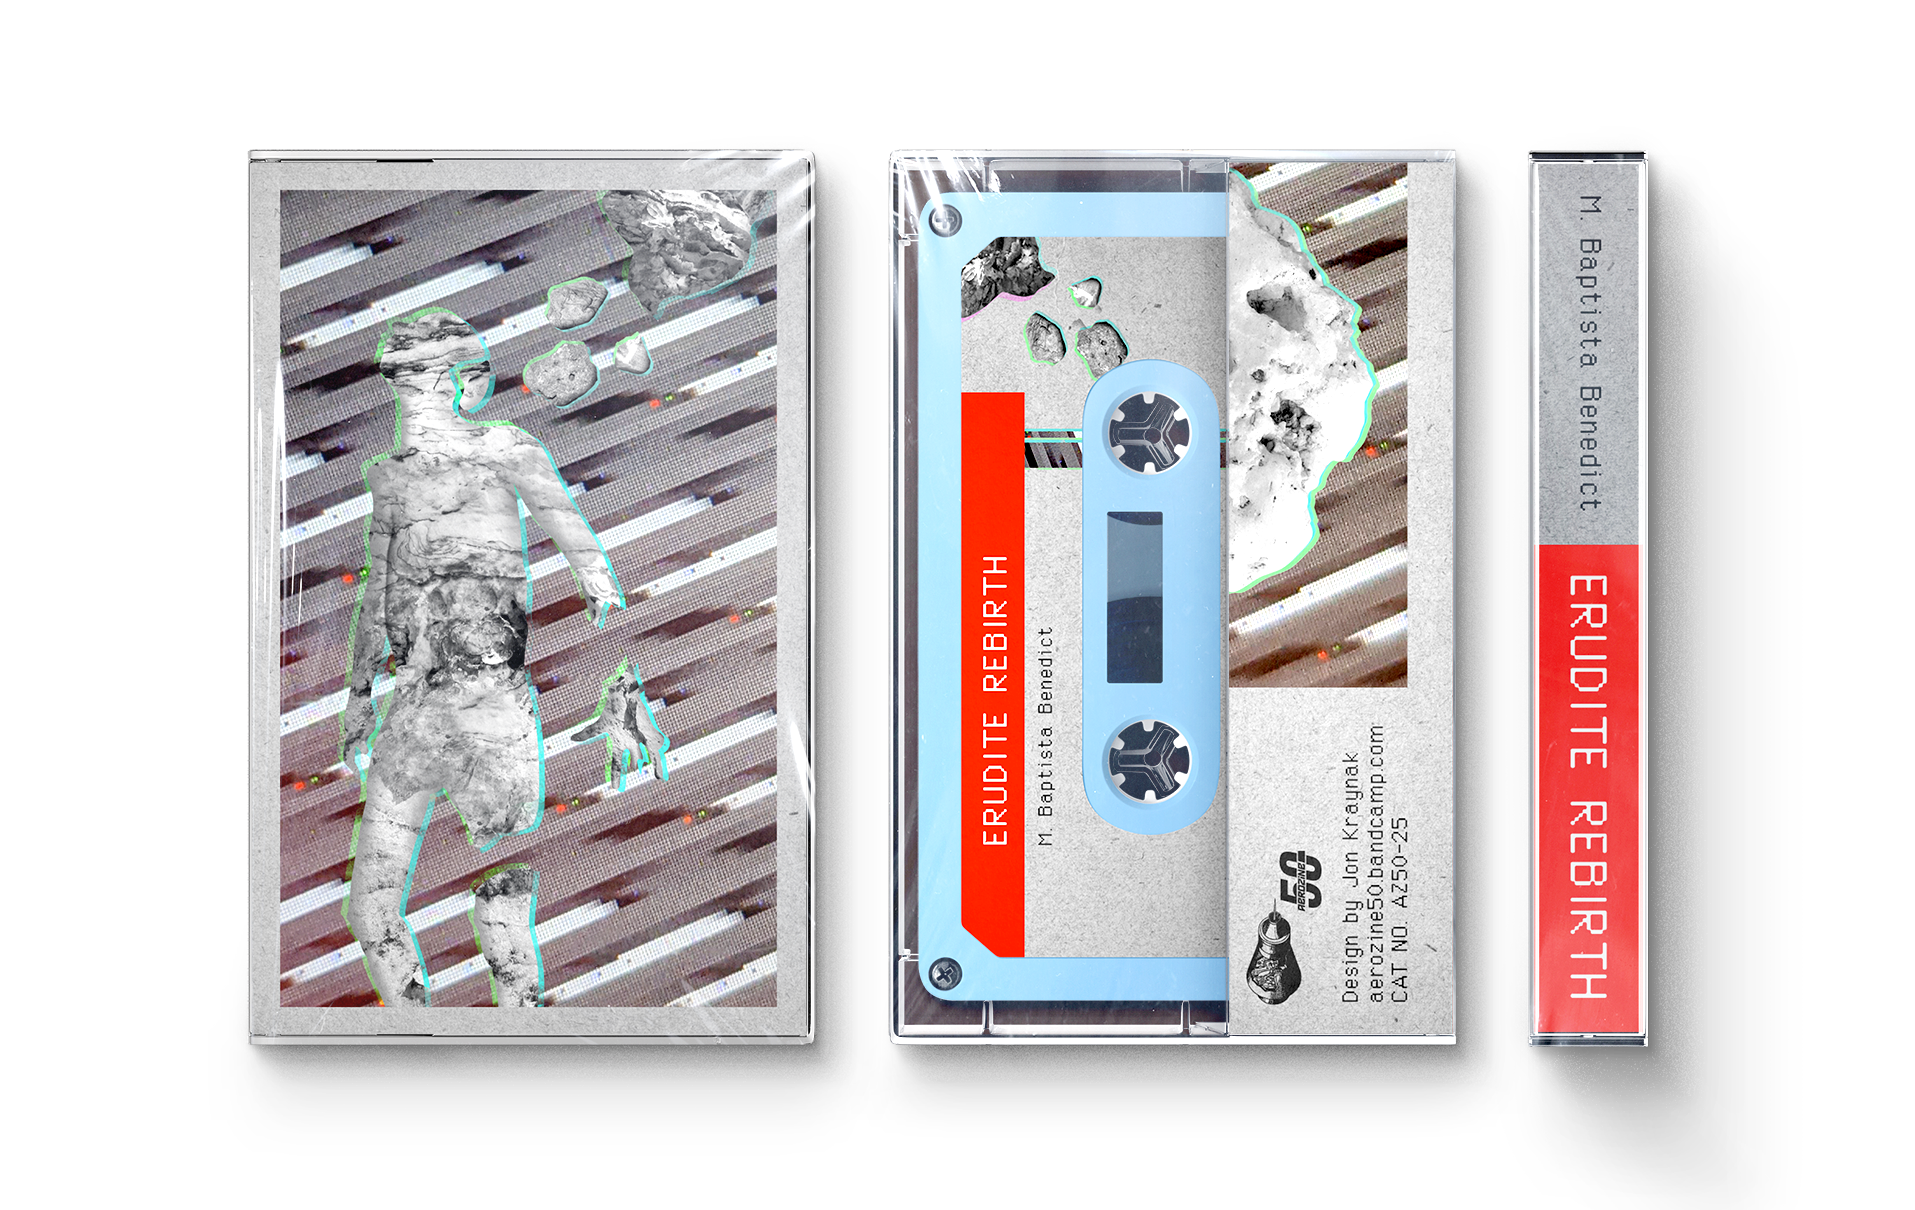  Cassette design for M. Baptista Benedict’s Erudite Rebirth. 